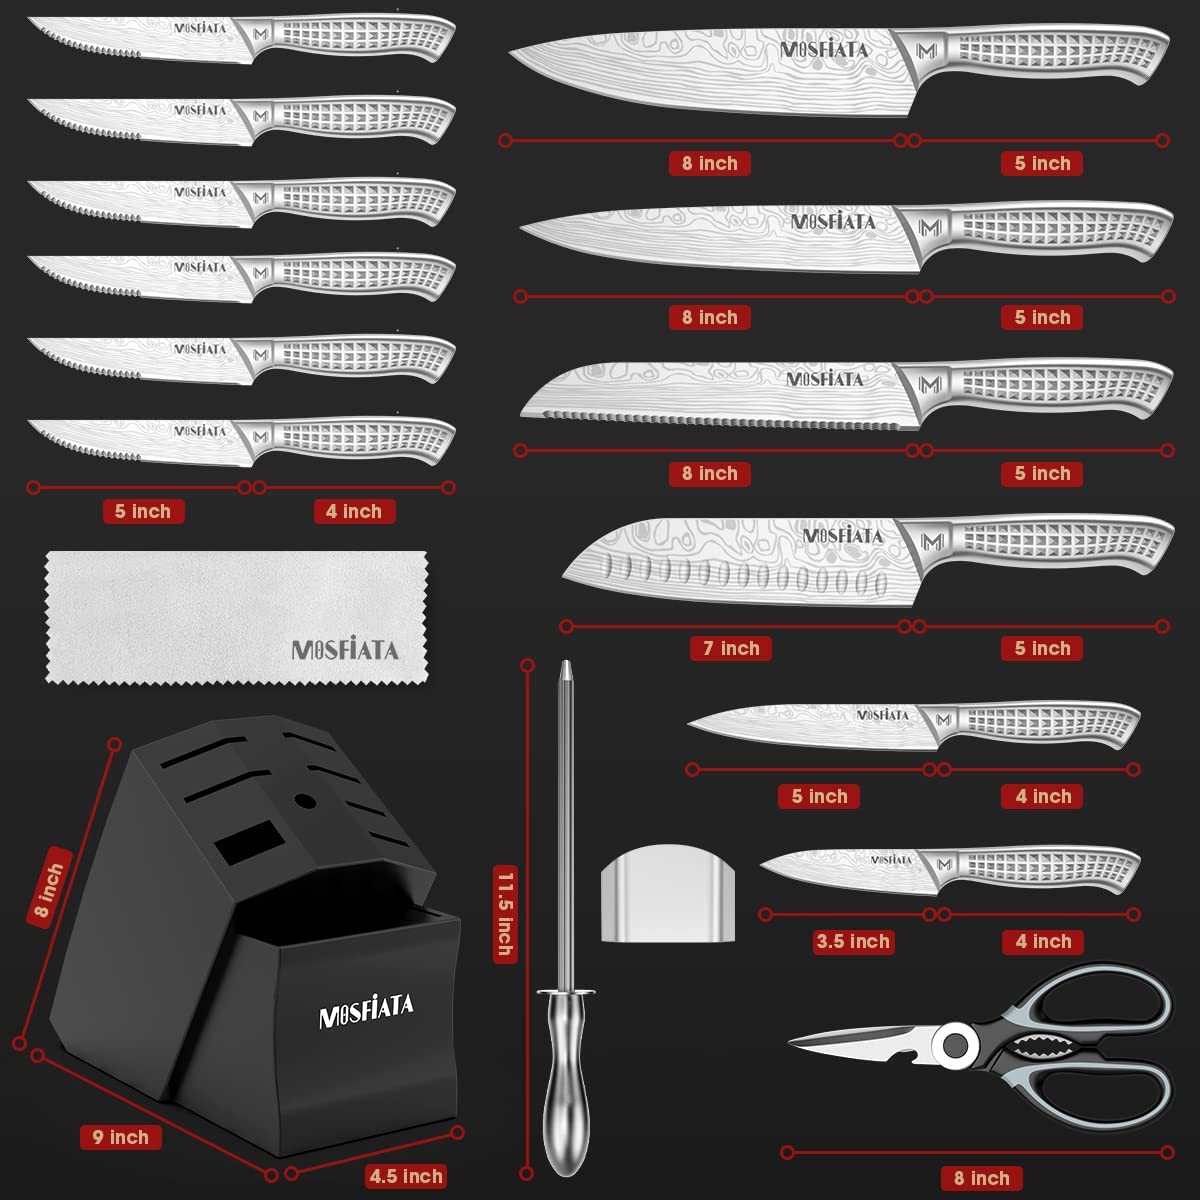 Kitchen Chef Knife Sharp 9 Piece Set, Premium Stainless Steel